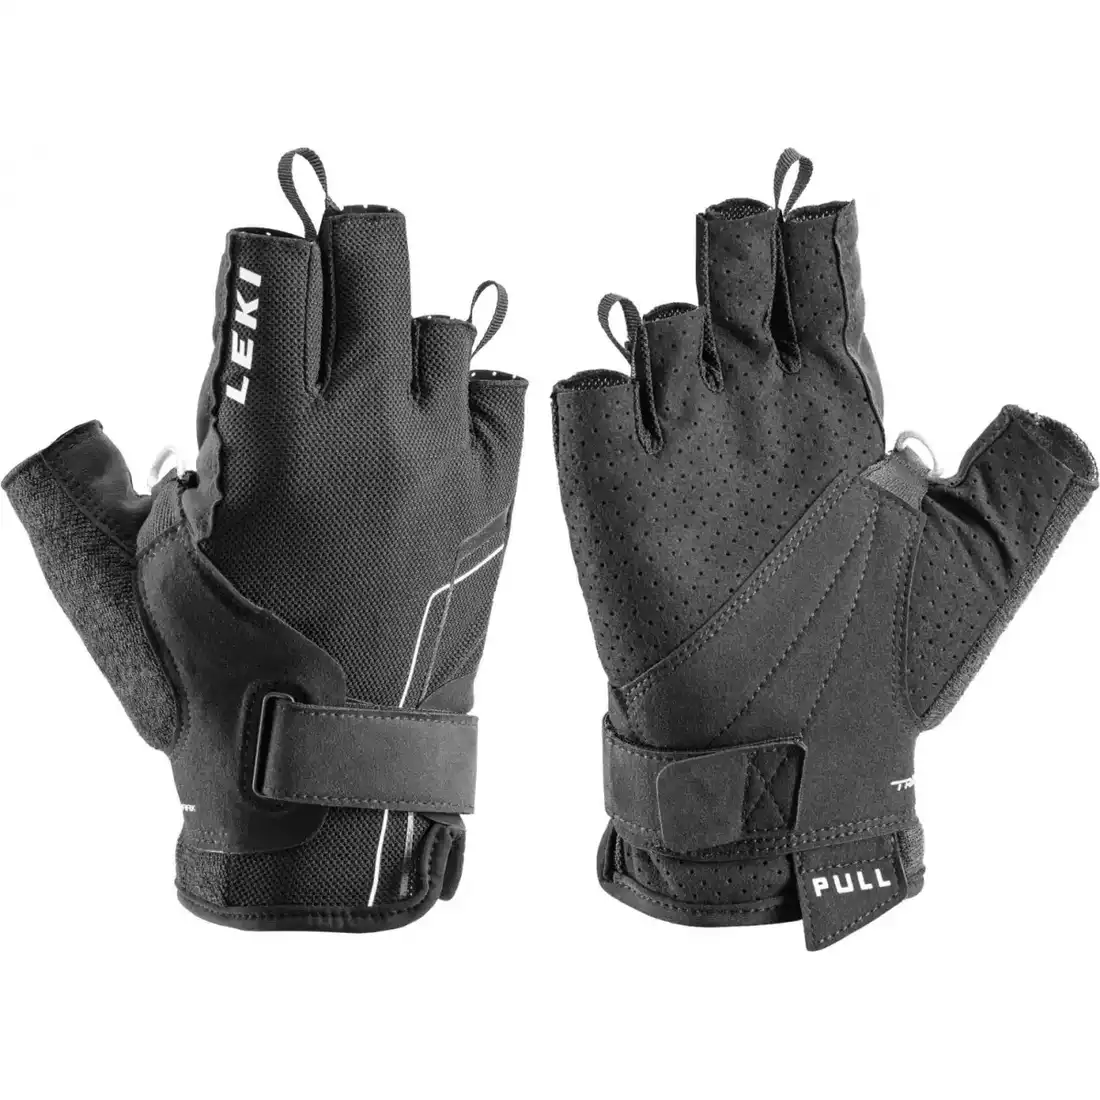 LEKI Nordic Breez Shark Short trekking gloves, black and white